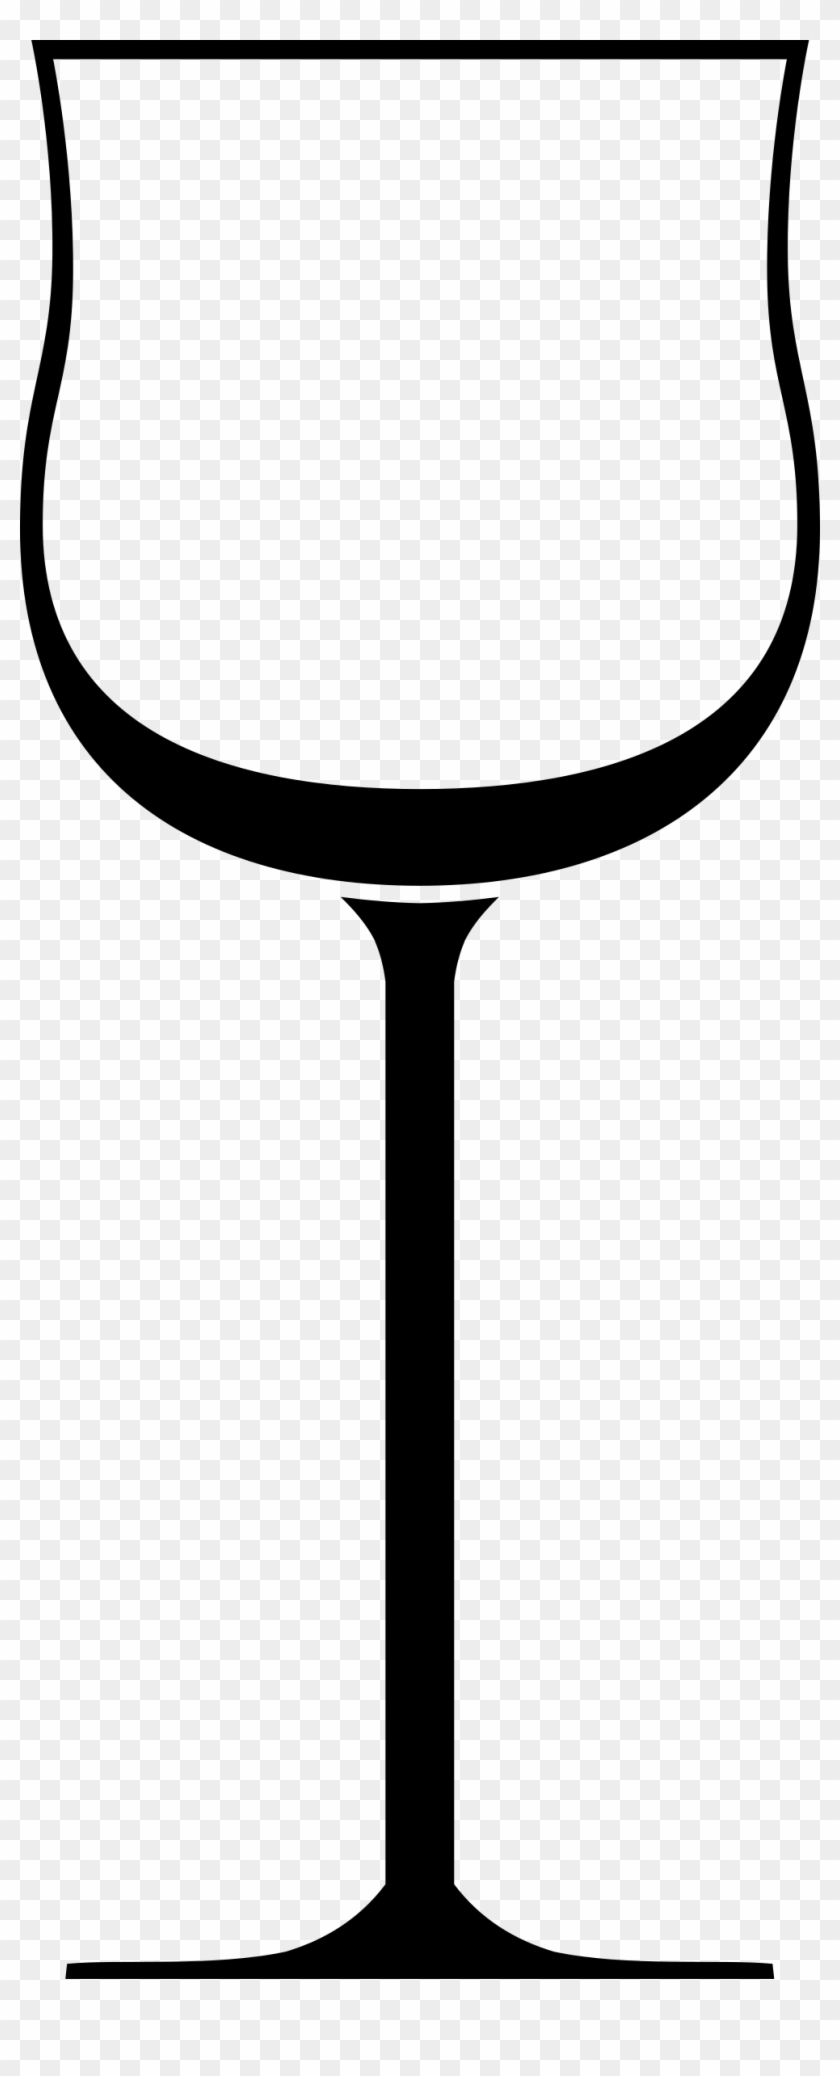 Wine Glass - Wine Glass Clip Art #96520